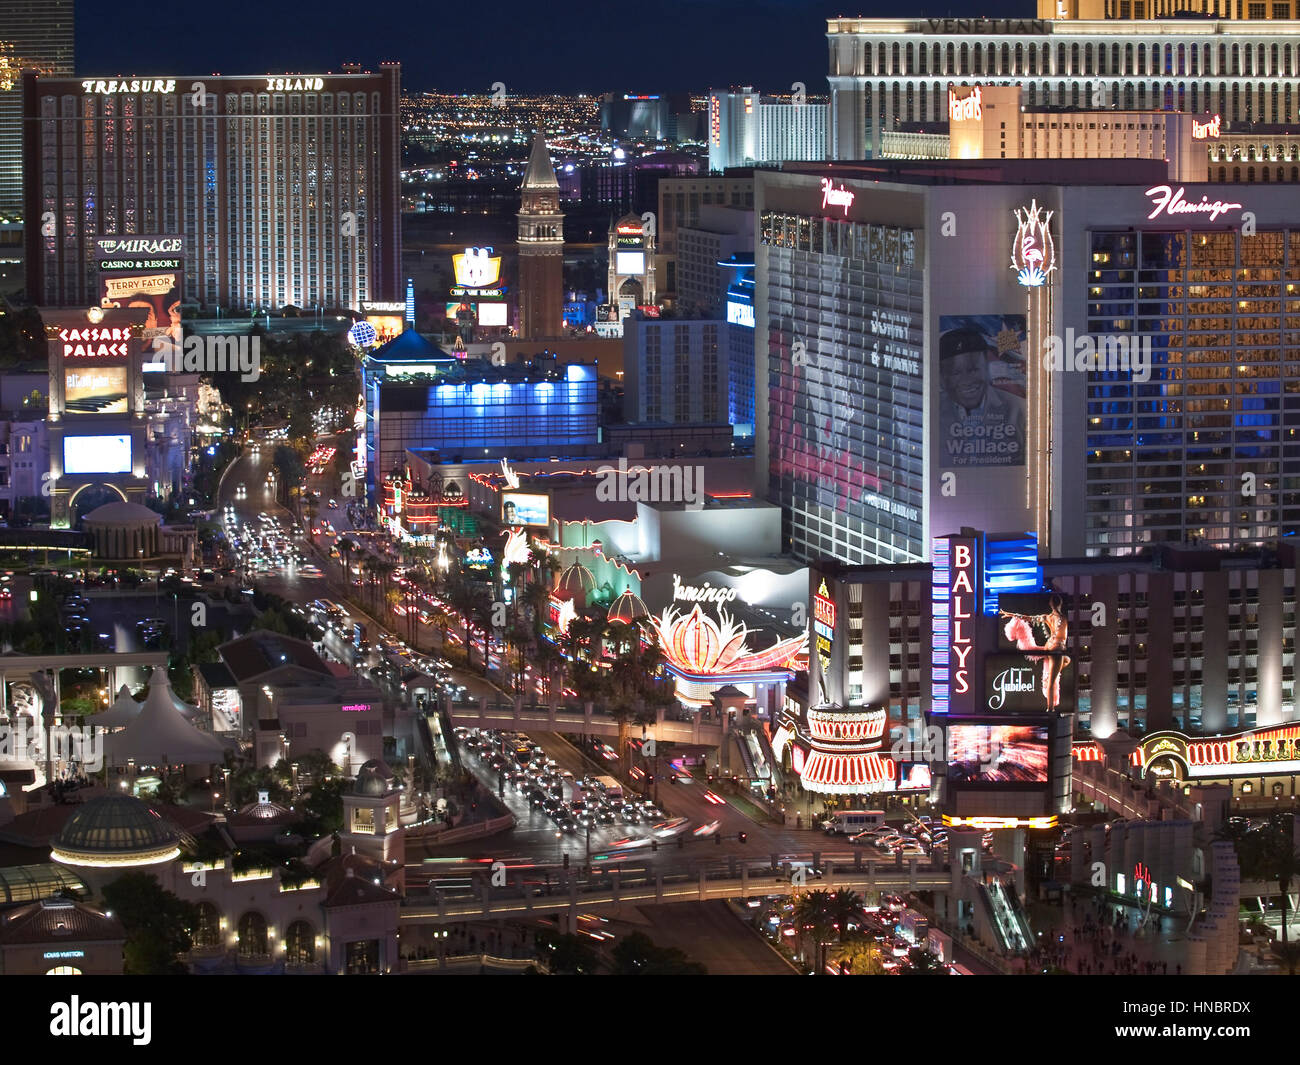 Las Vegas, Nevada, USA - 6. Oktober 2011: Am frühen Abendlicht auf der Schatzinsel, Streifen Flamingo und anderen Resorts in Las Vegas. Stockfoto